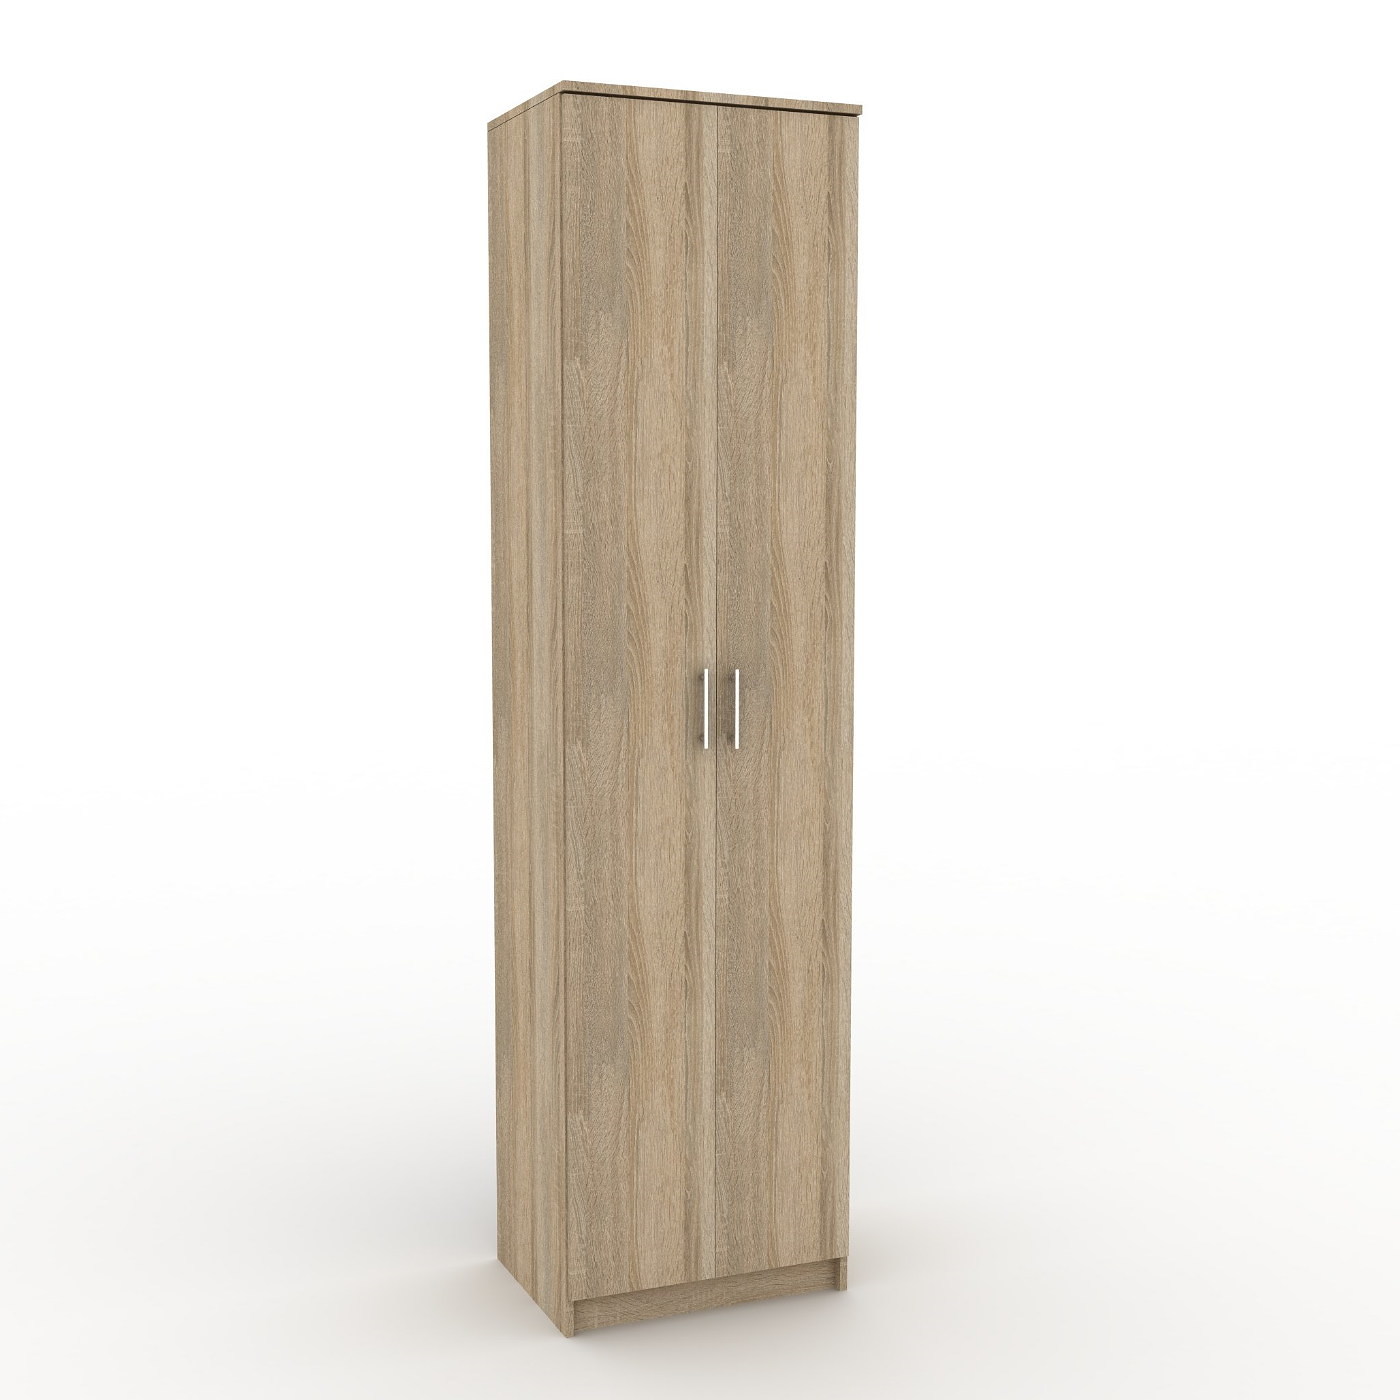 Шкаф Эконом-200g классический для прихожей и спальни - фото 1 large